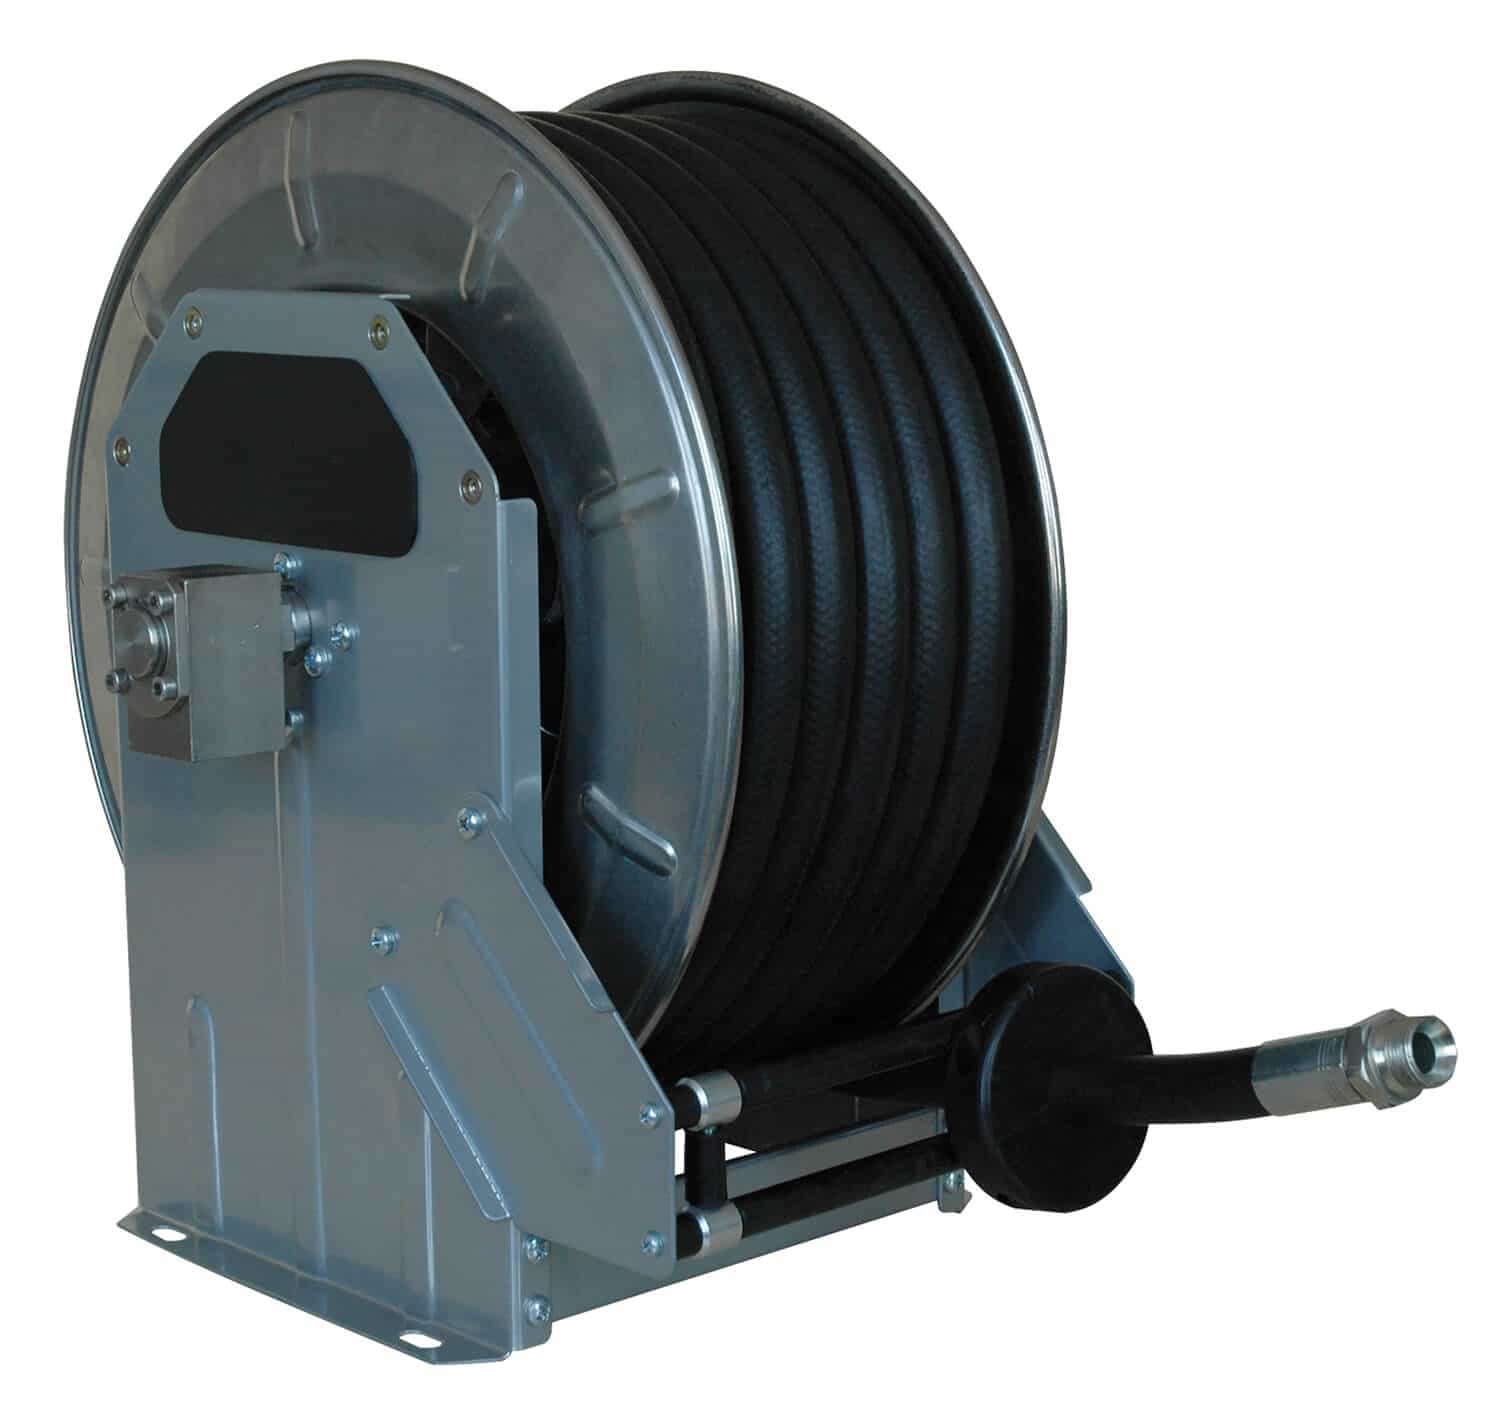 Automatischer Schlauchaufroller für Hochdruck komplett in Edelstahl für bis zu 40 m Schlauch DN 10, zur Wand-, Boden- oder Deckenmontage.